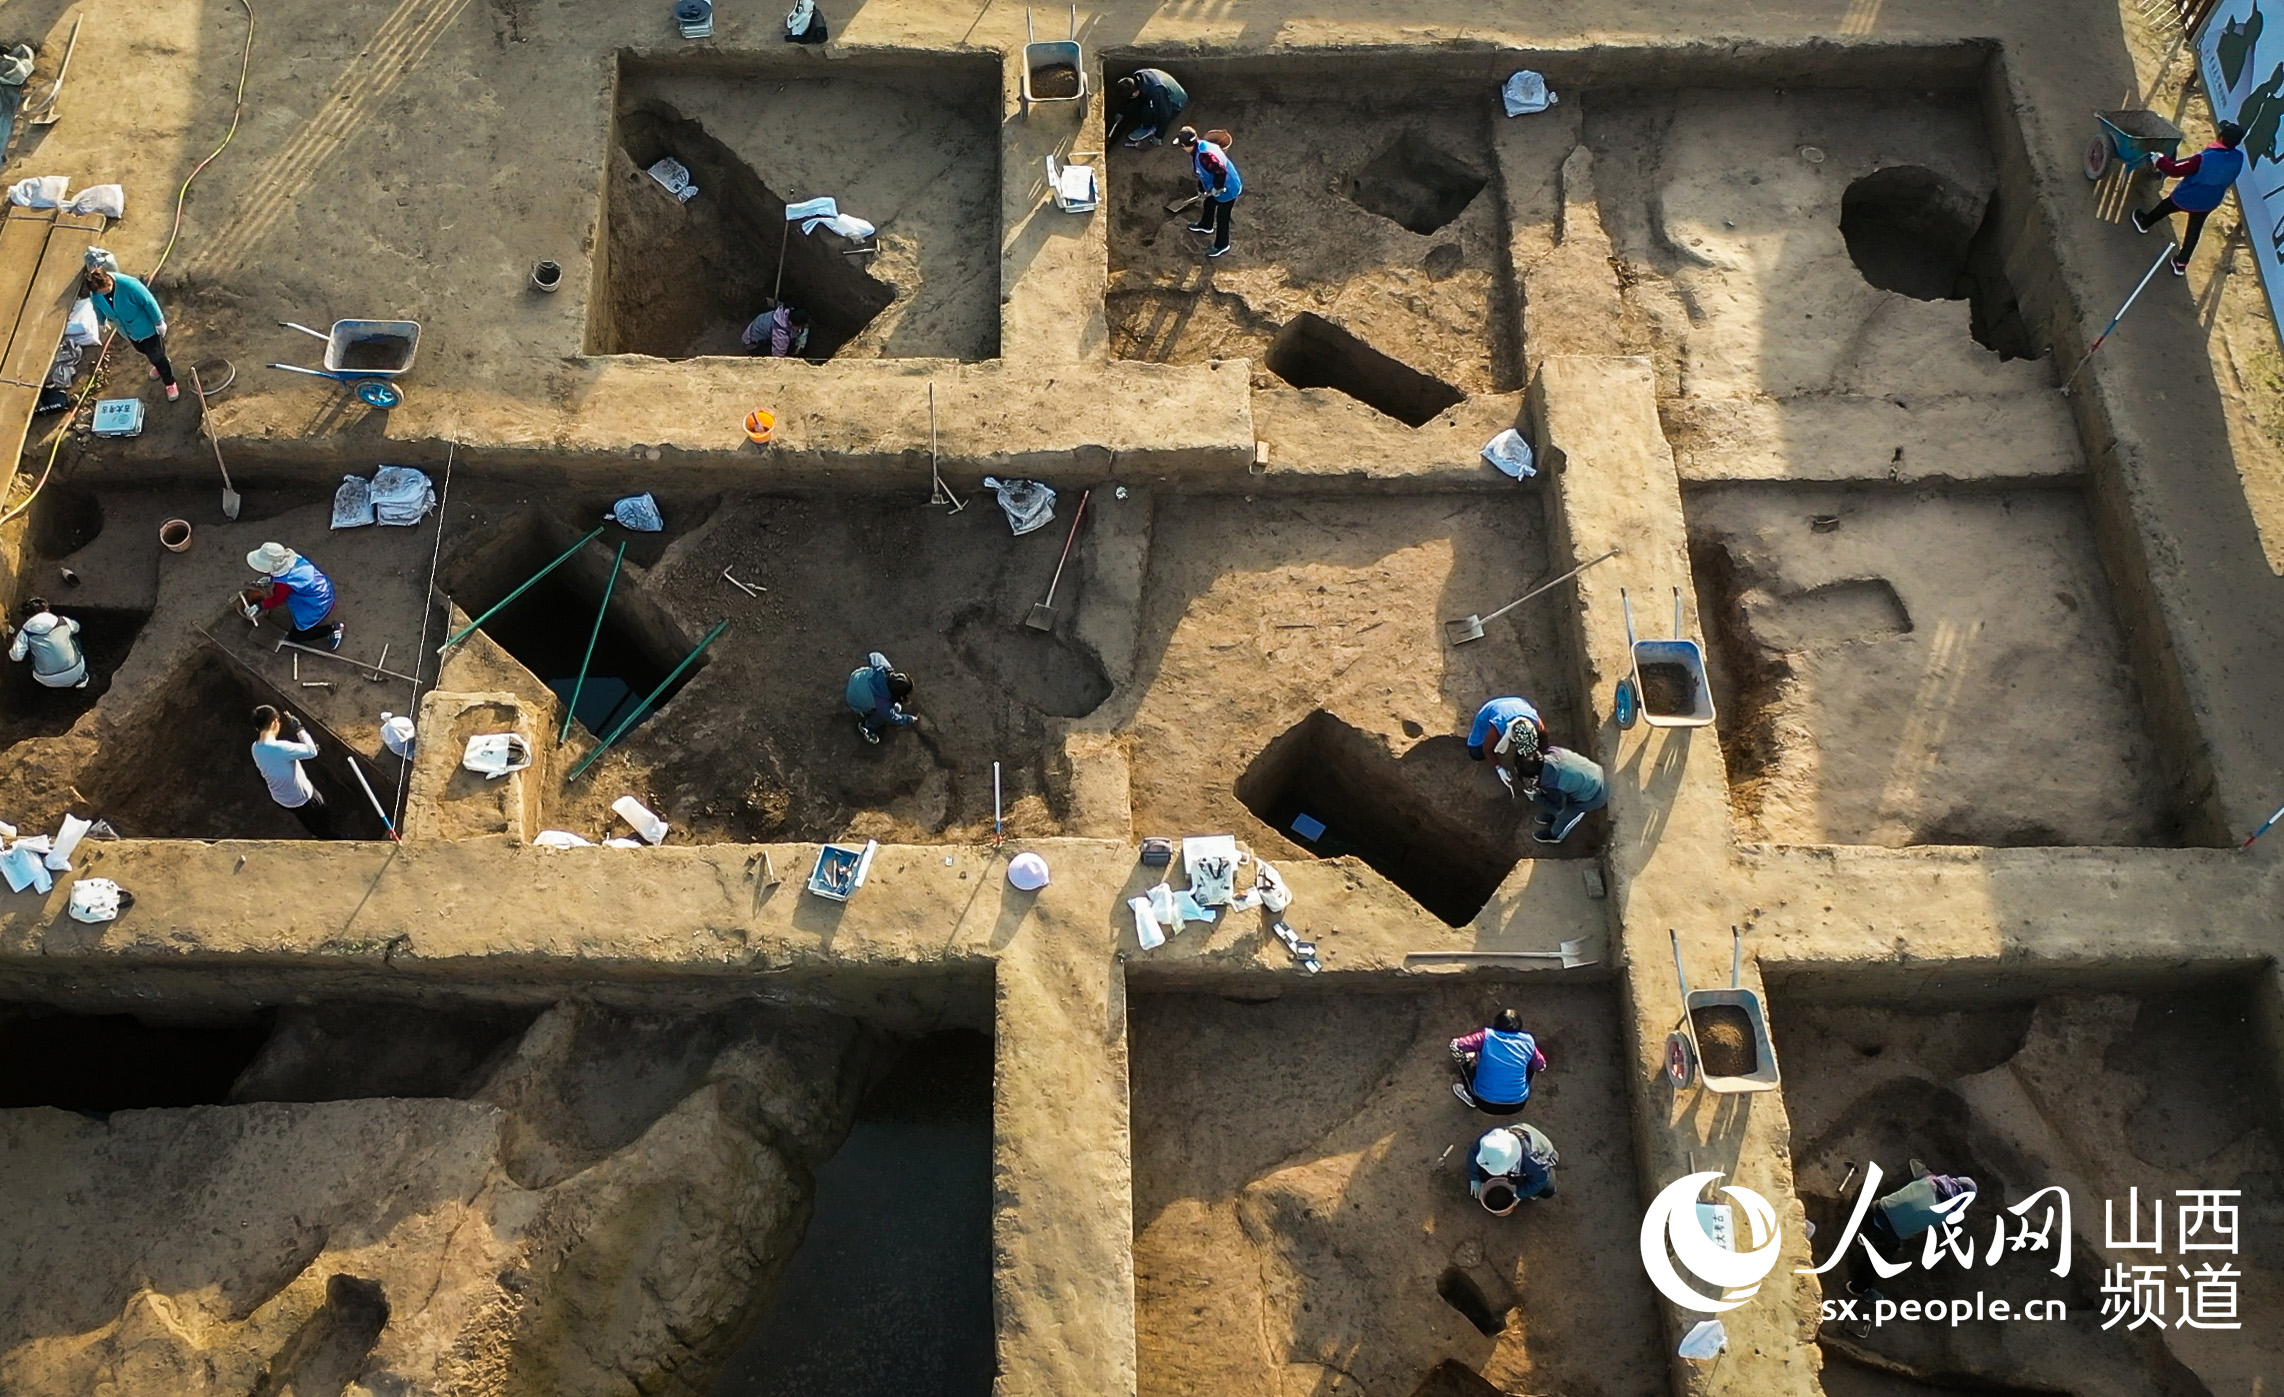 吉林大學考古學院師生在探方裡發掘遺跡